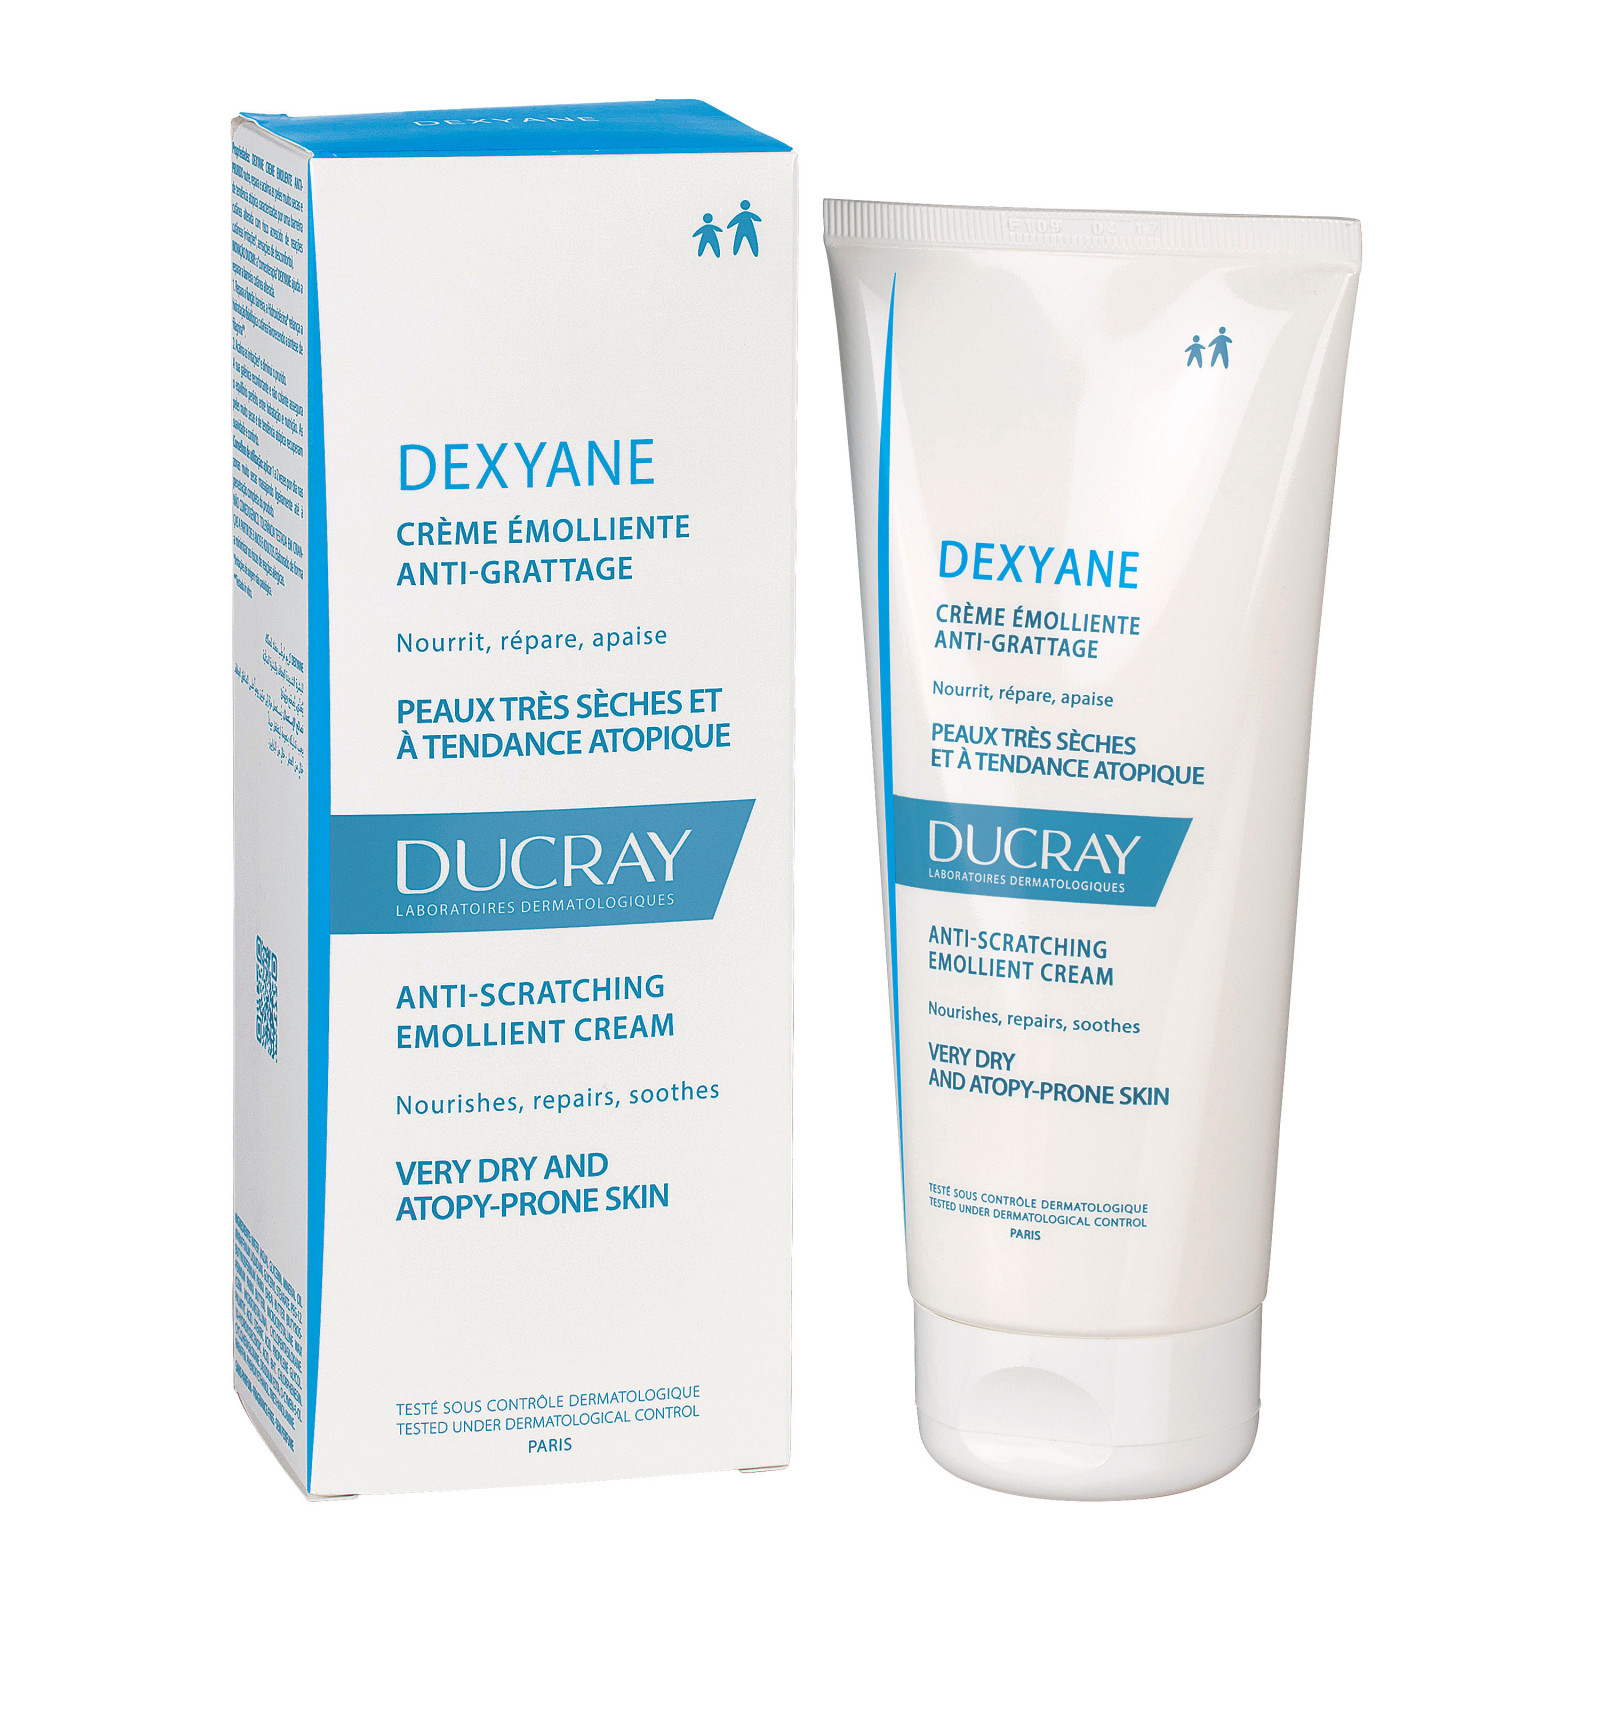 Duc dexyane gel nettoyant visage & corps 400mlDucray – Dexyane MeD Crème réparatrice apaisante – 100 ml Ducray – Dexyane Baume Émollient Anti-Grattage – 200 Ml